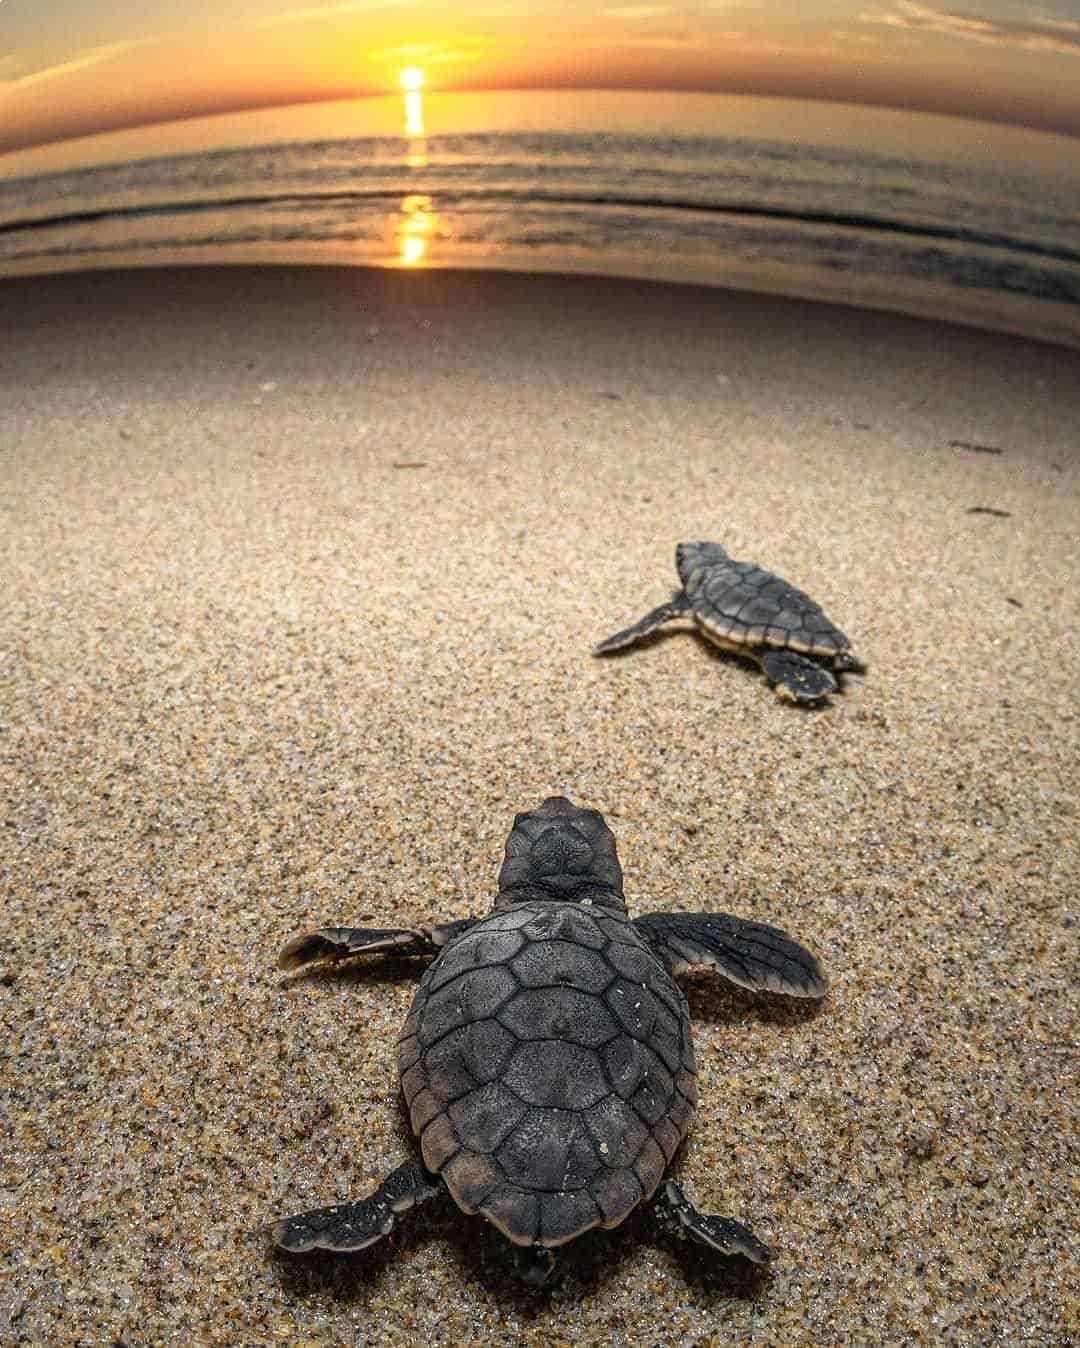 Dream of Killing a Turtle